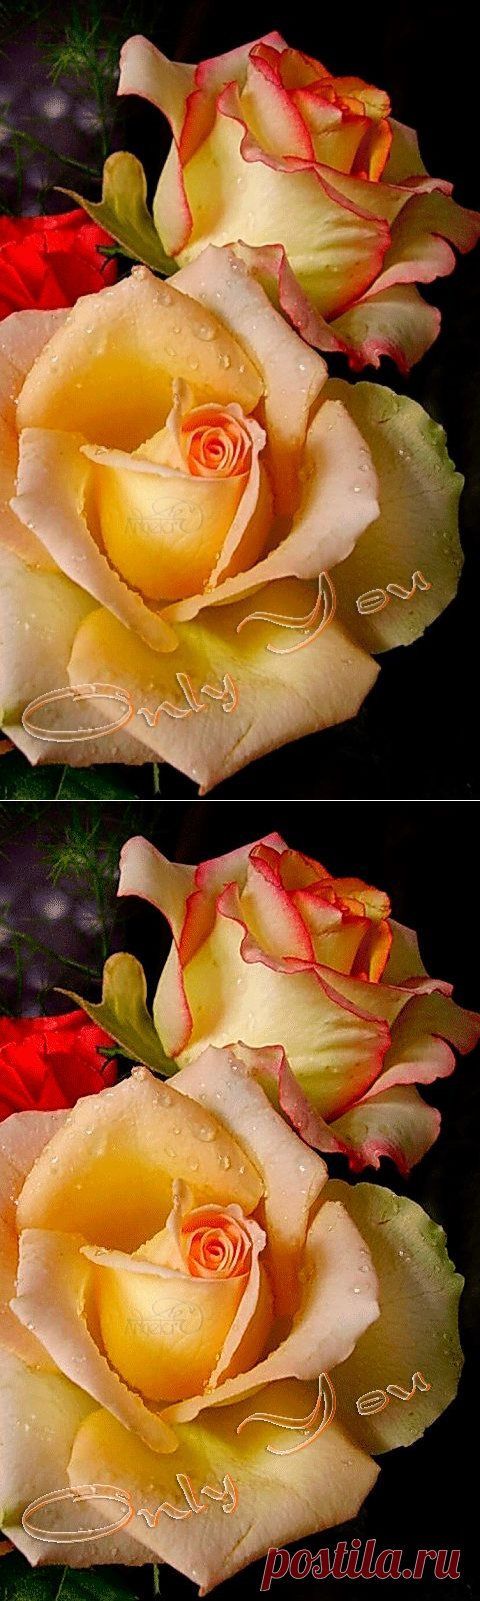 Фото. Изумительно красивые розы... - Красочный виртуальный журнал КАРТИНКИ